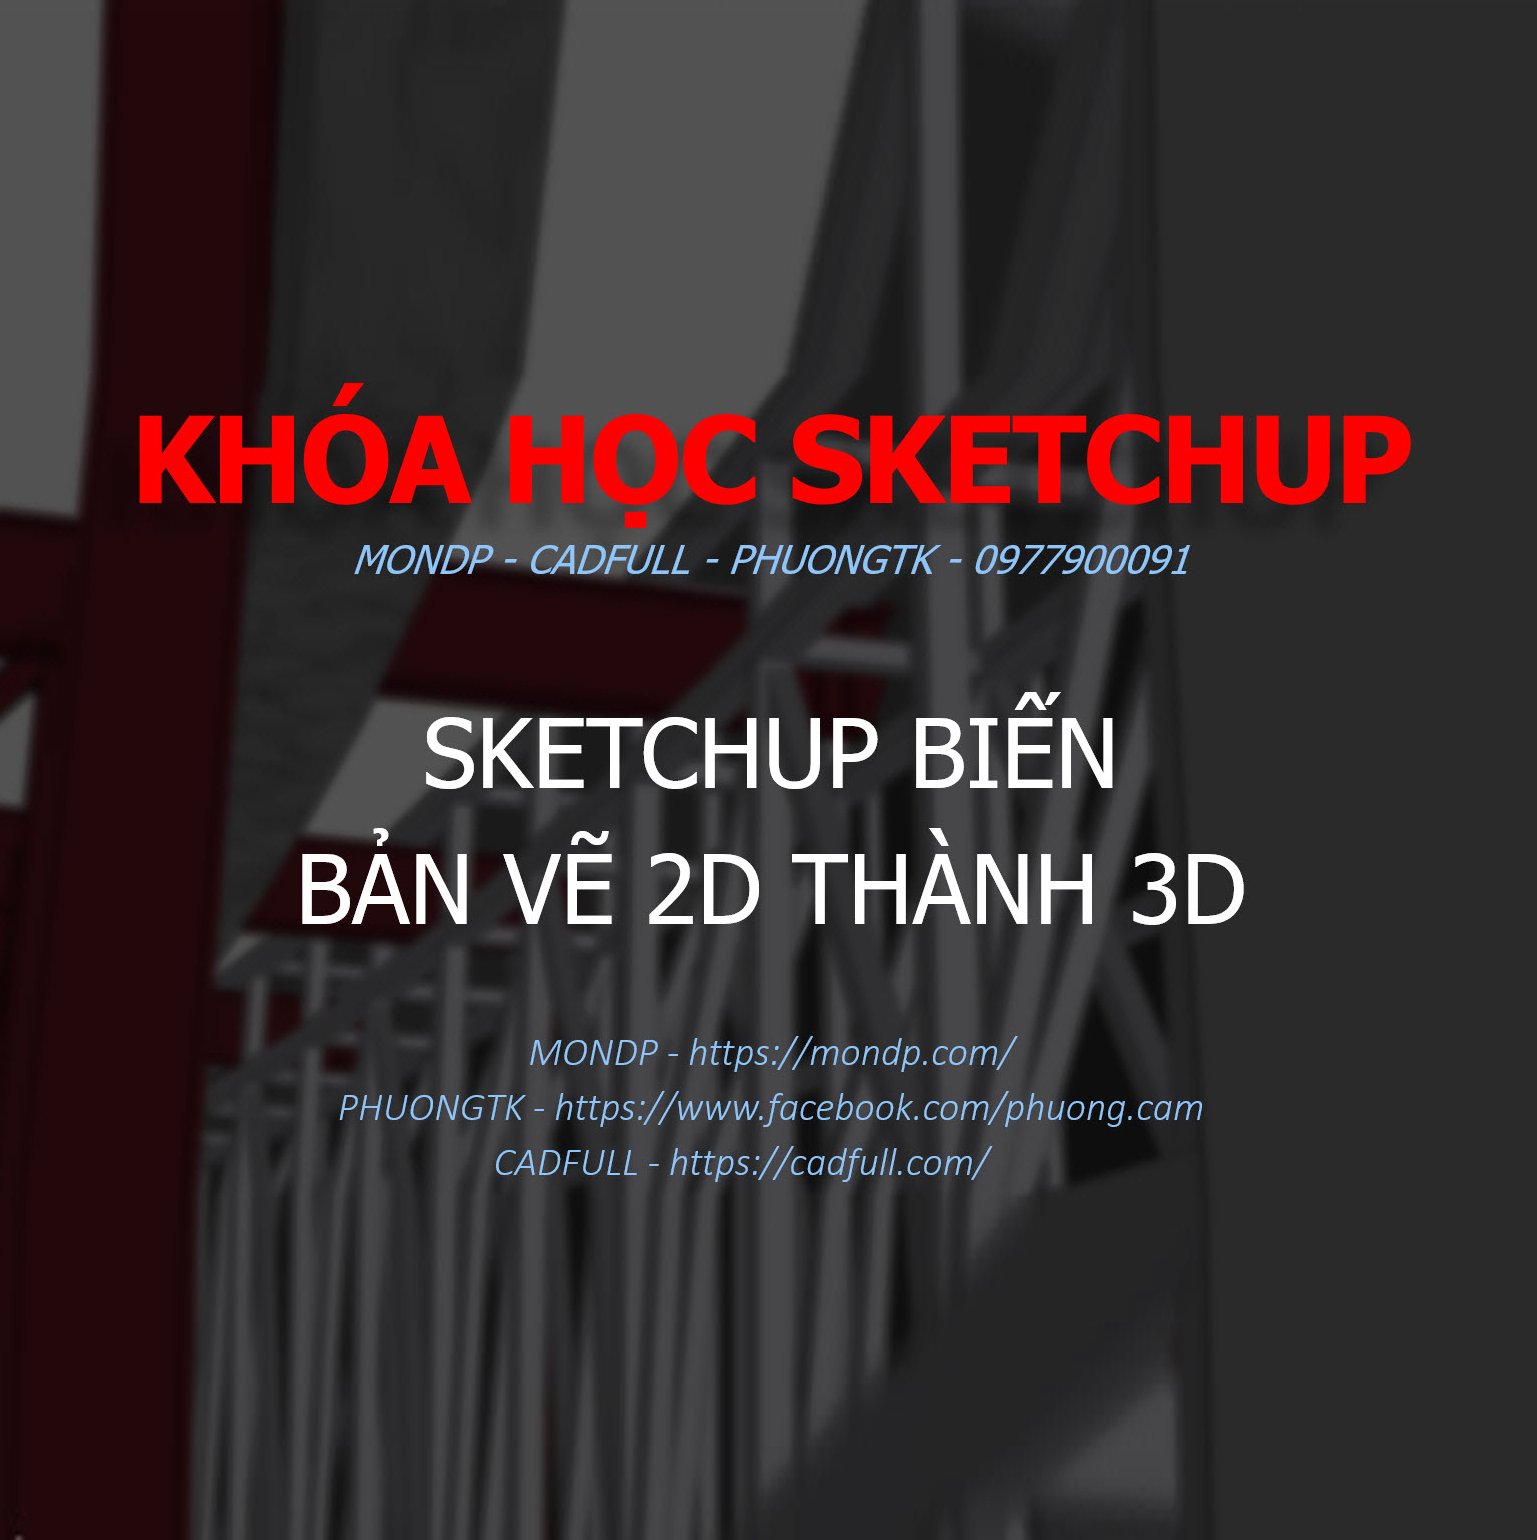 Sketchup là một công cụ tuyệt vời để biến những bức ảnh 2D thành những mô hình 3D đẹp mắt và chi tiết. Hãy tìm hiểu cách dùng Sketchup để thổi hồn vào những hình ảnh của bạn ngay hôm nay!